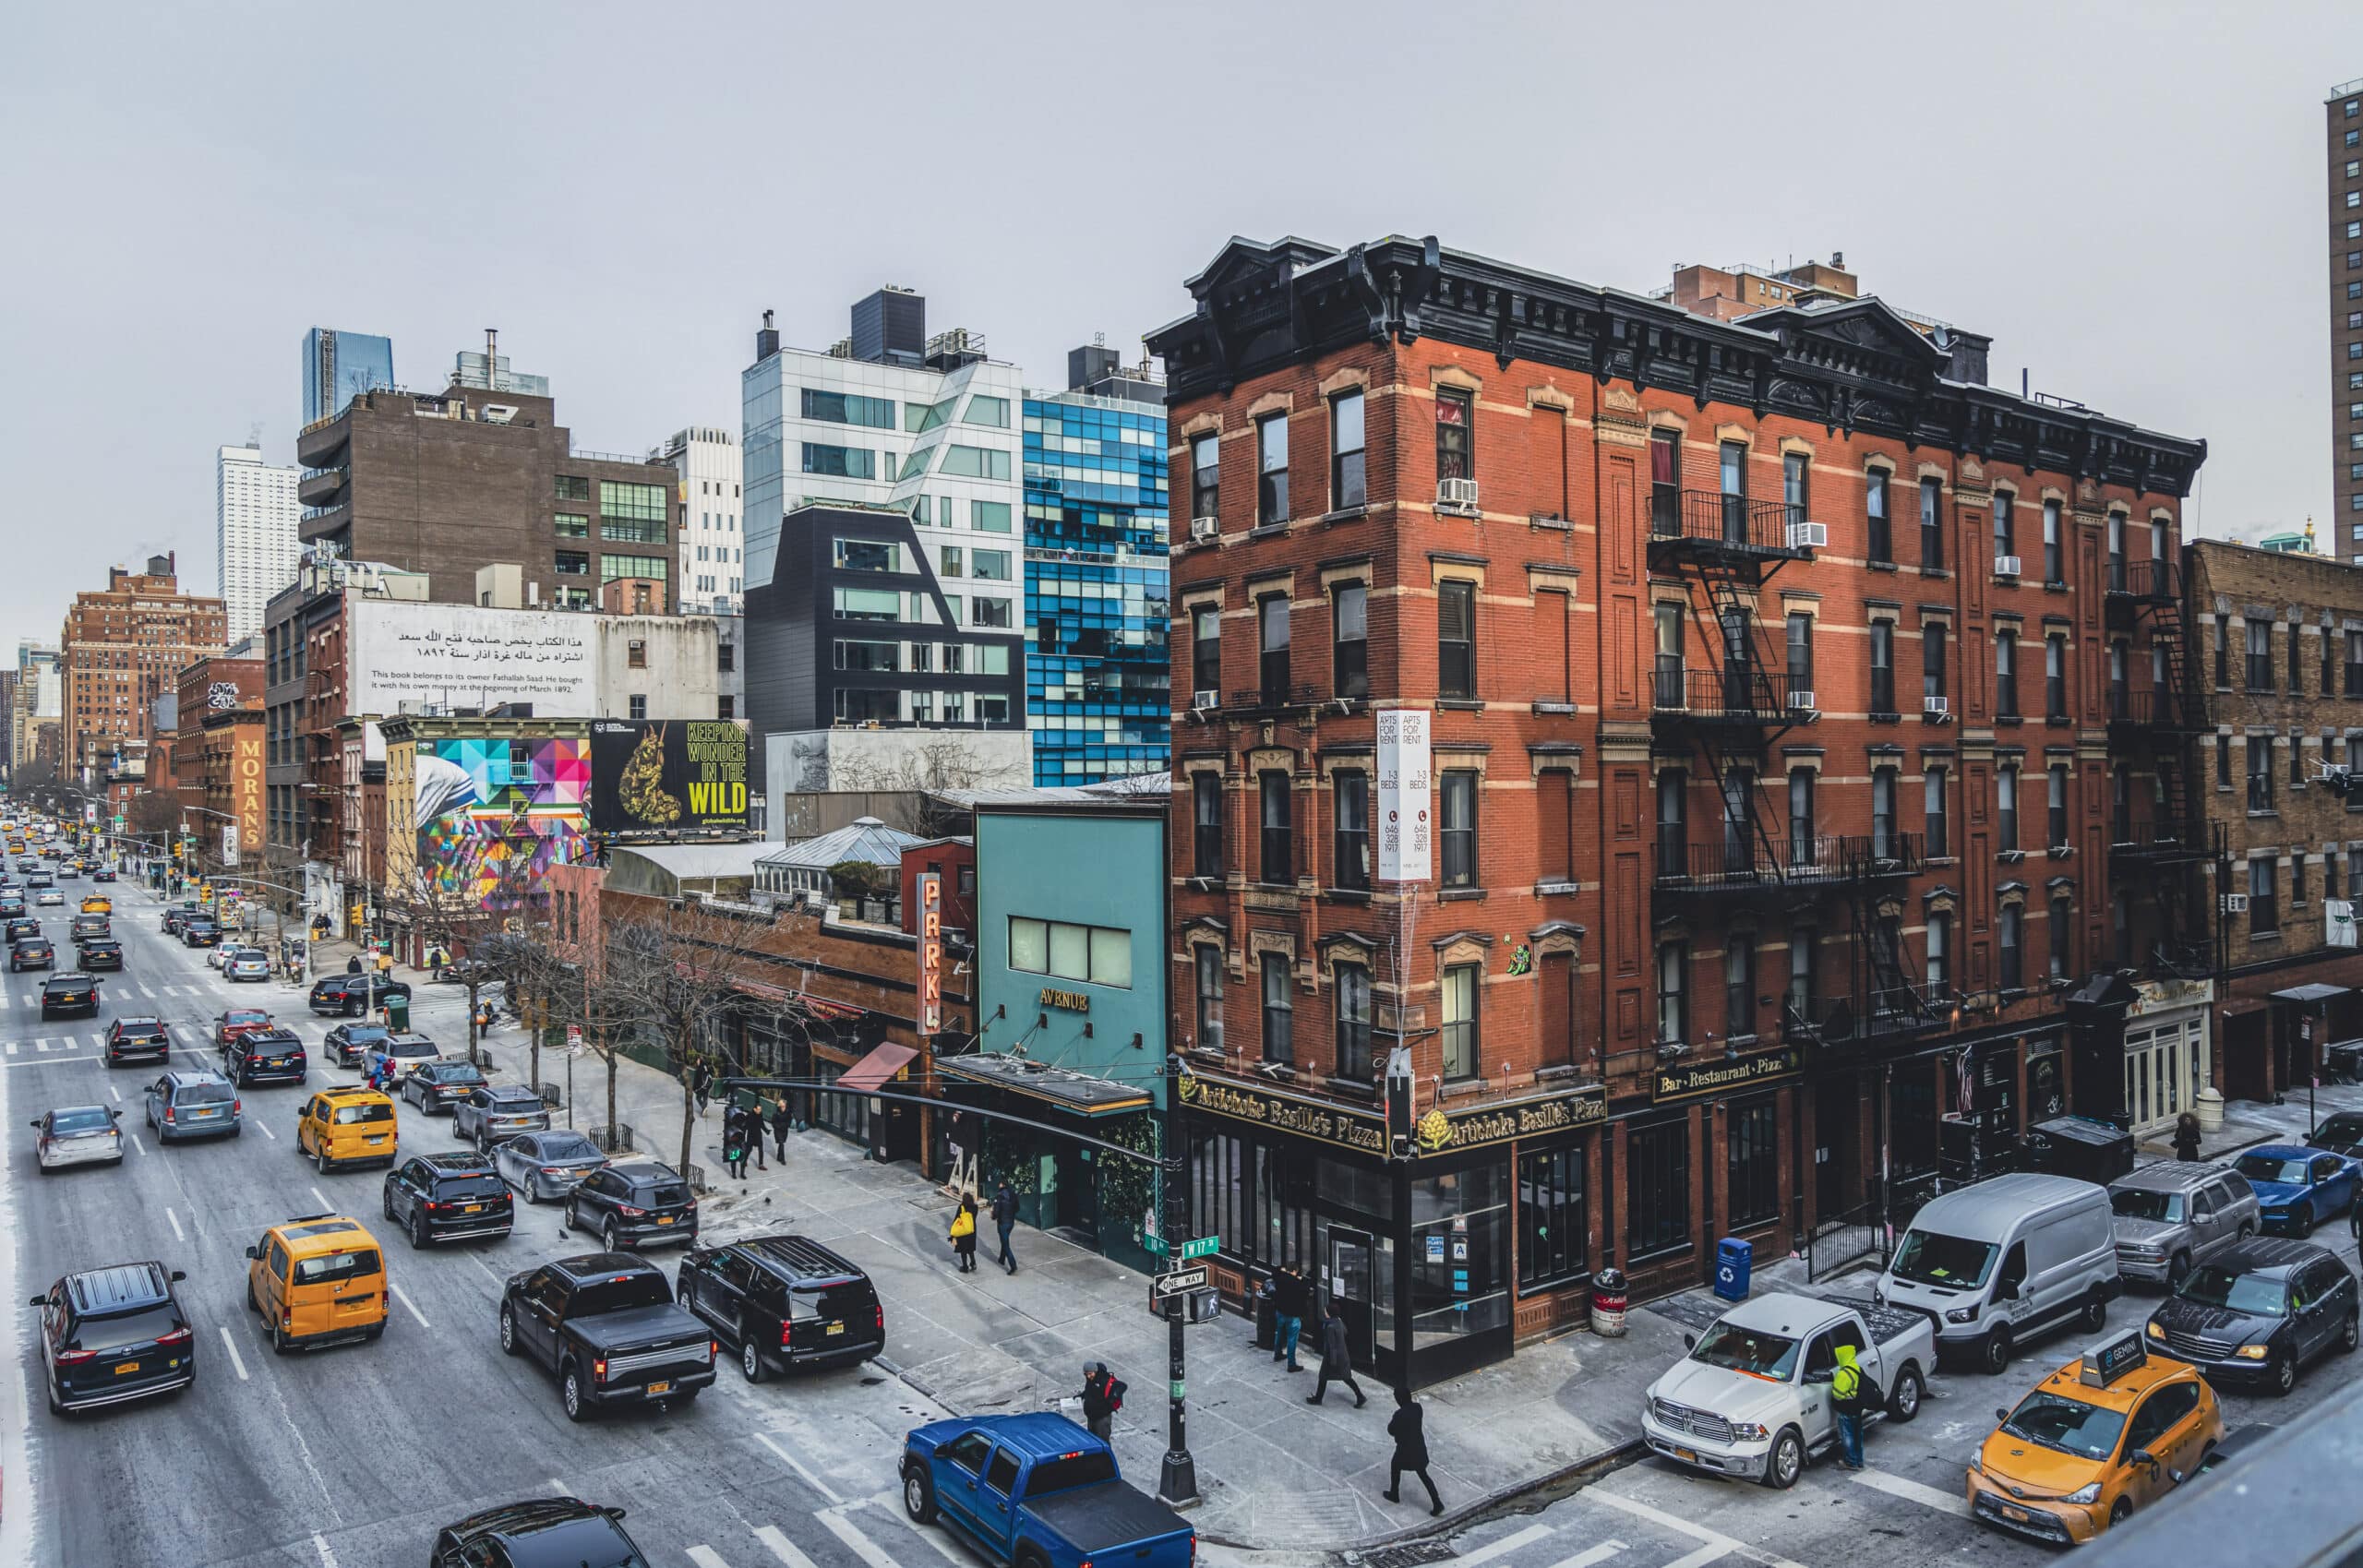 Ein belebtes urbanes Straßenbild mit traditionellen roten Backsteingebäuden, flankiert von moderner Architektur, Verkehr und Fußgängern, das die dynamische Mischung aus Alt und Neu in einer Stadt hervorhebt. © Fotografie Tomas Rodriguez